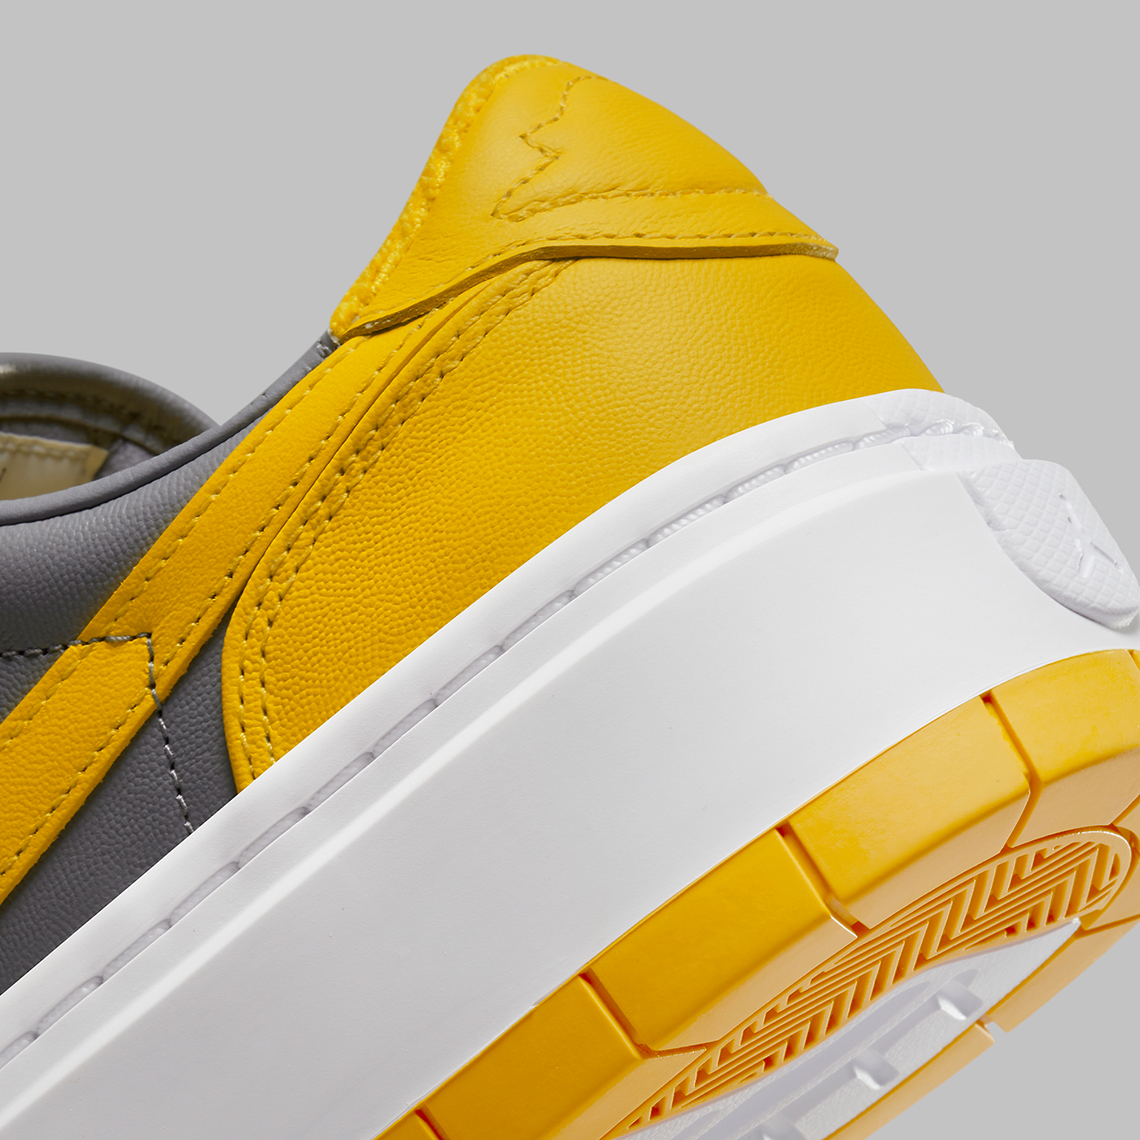 Air Jordan 1 Low Elevate Yellow Grey DH7004-017 | SneakerNews.com